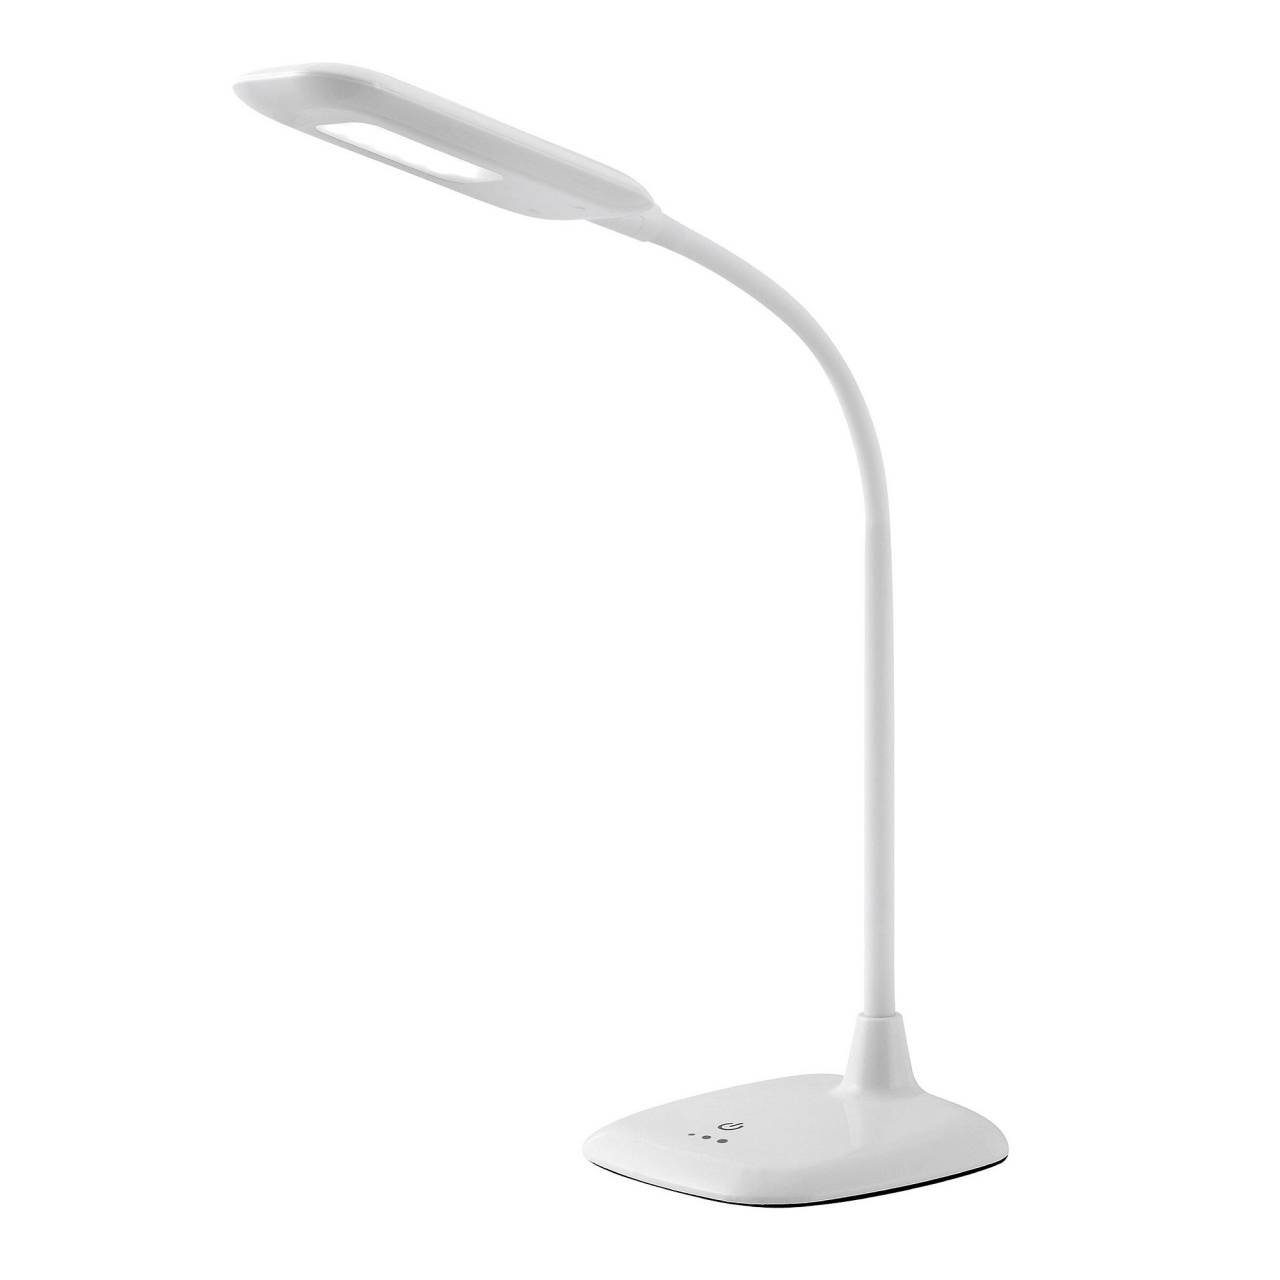 (S Nele, Brilliant Tischleuchte Tischleuchte LED 5W 1x Lampe Touchdimmer Nele integriert LED 6500K, weiß